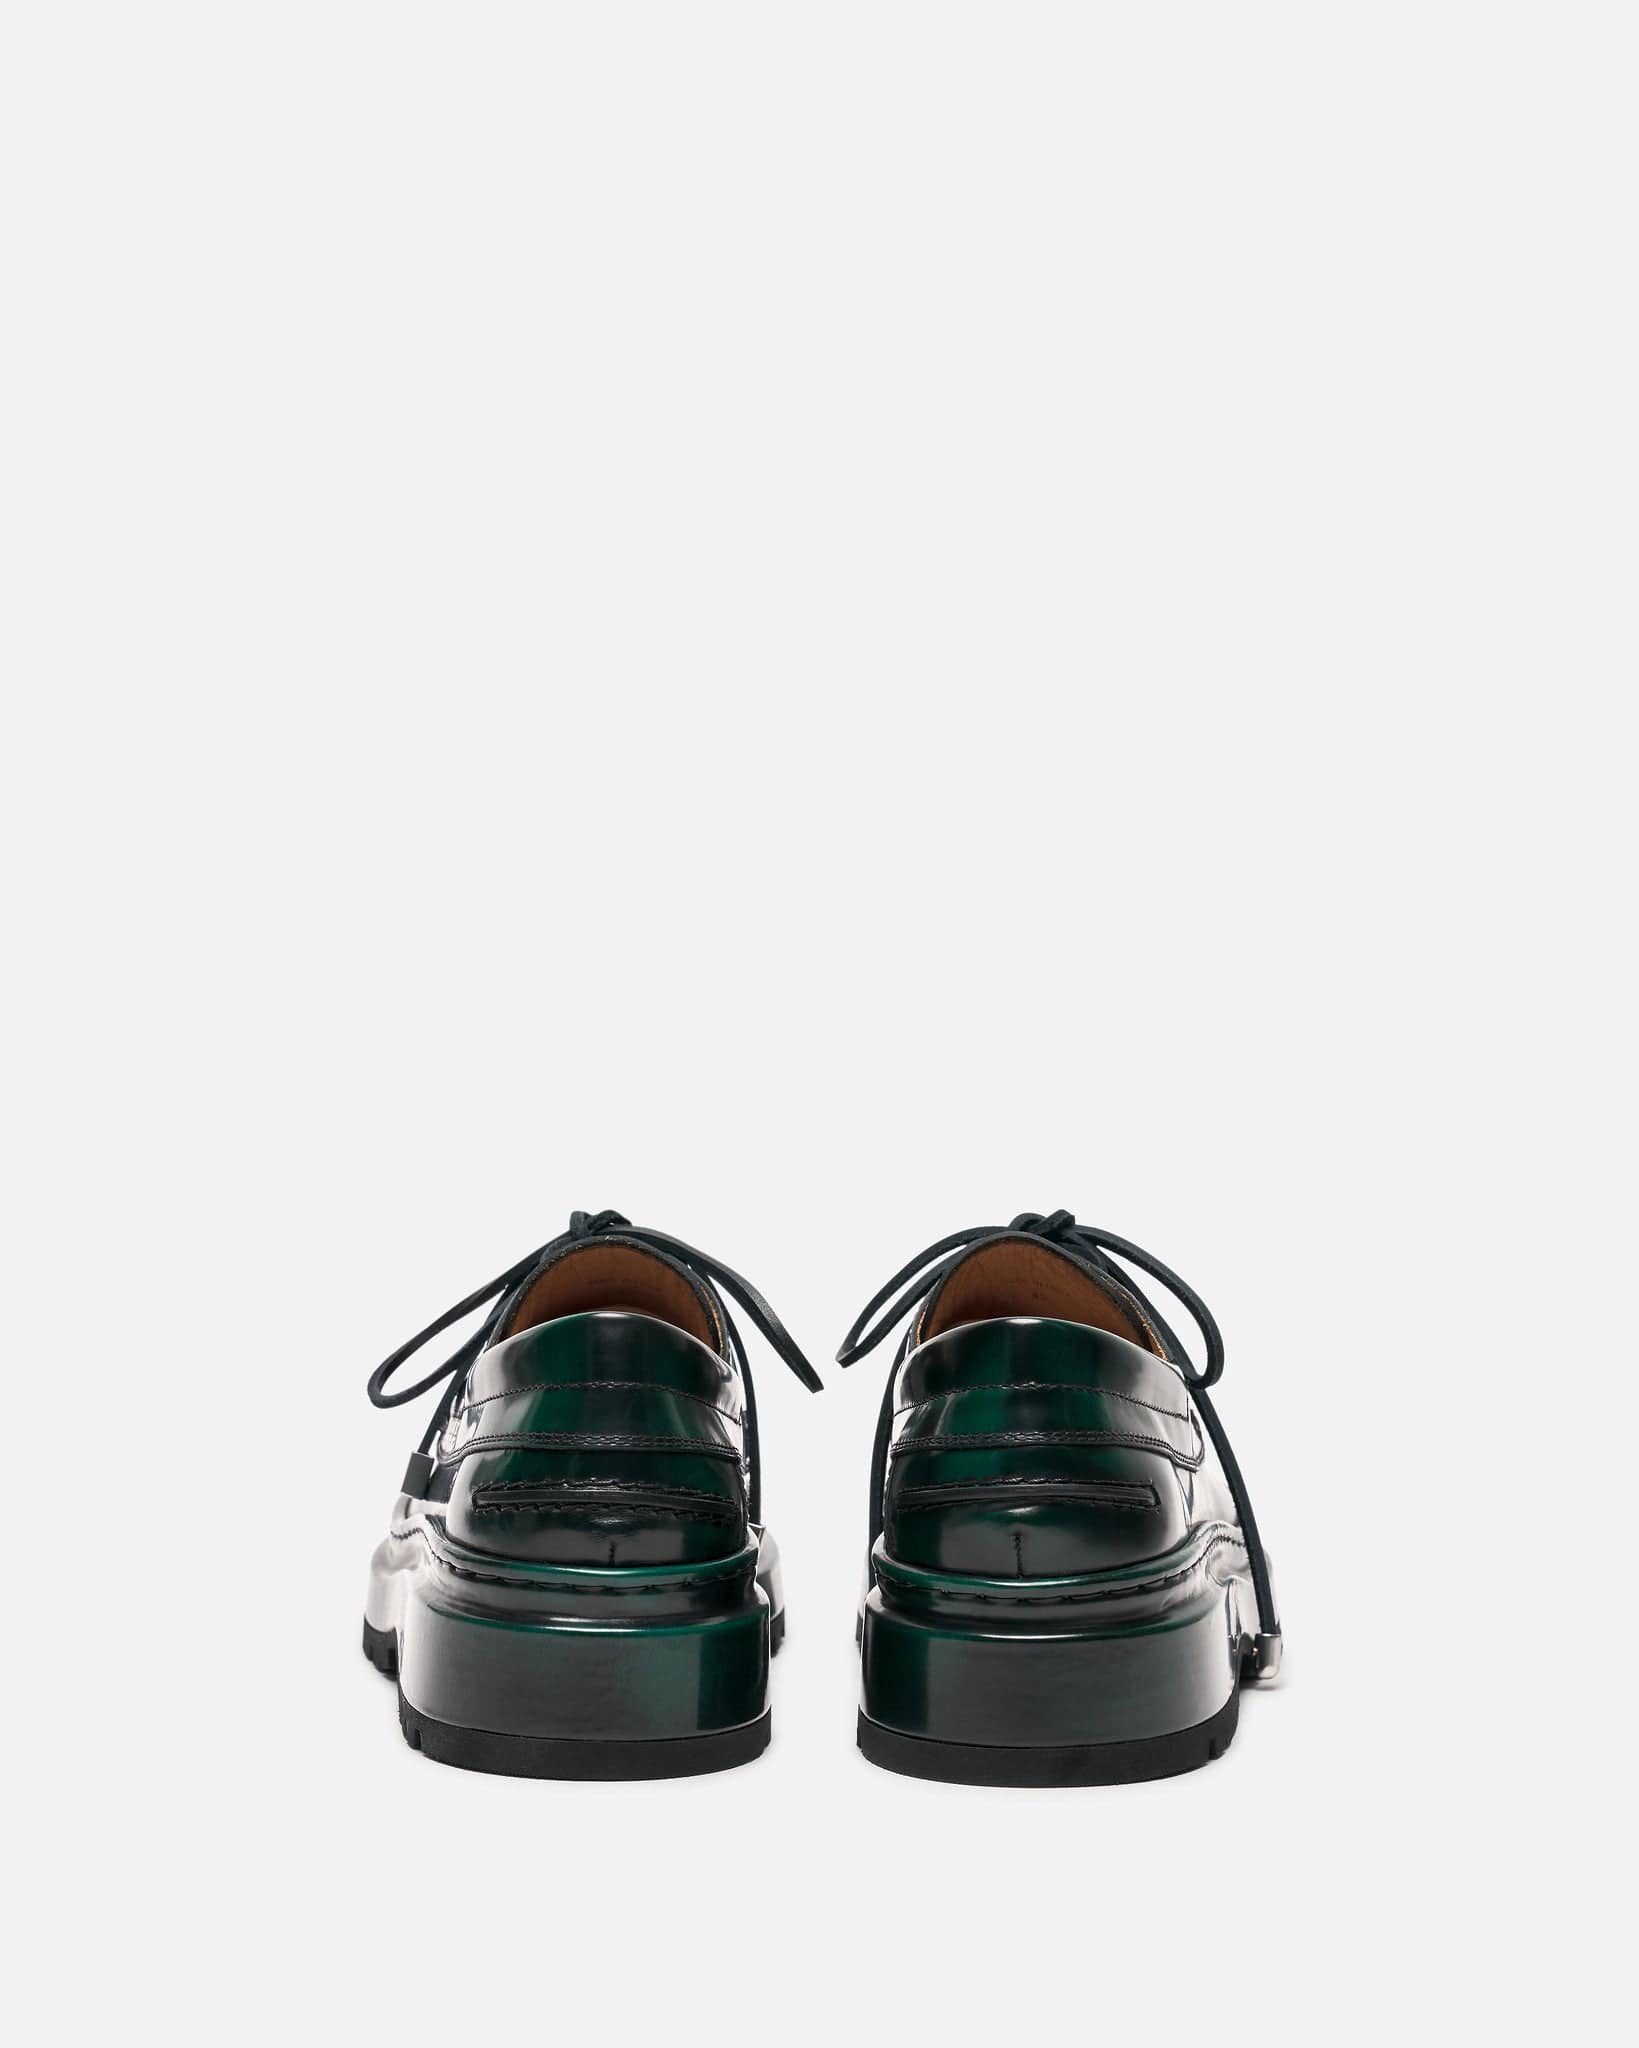 Jacquemus Men's Shoes Les Bateau Pavane in Dark Green